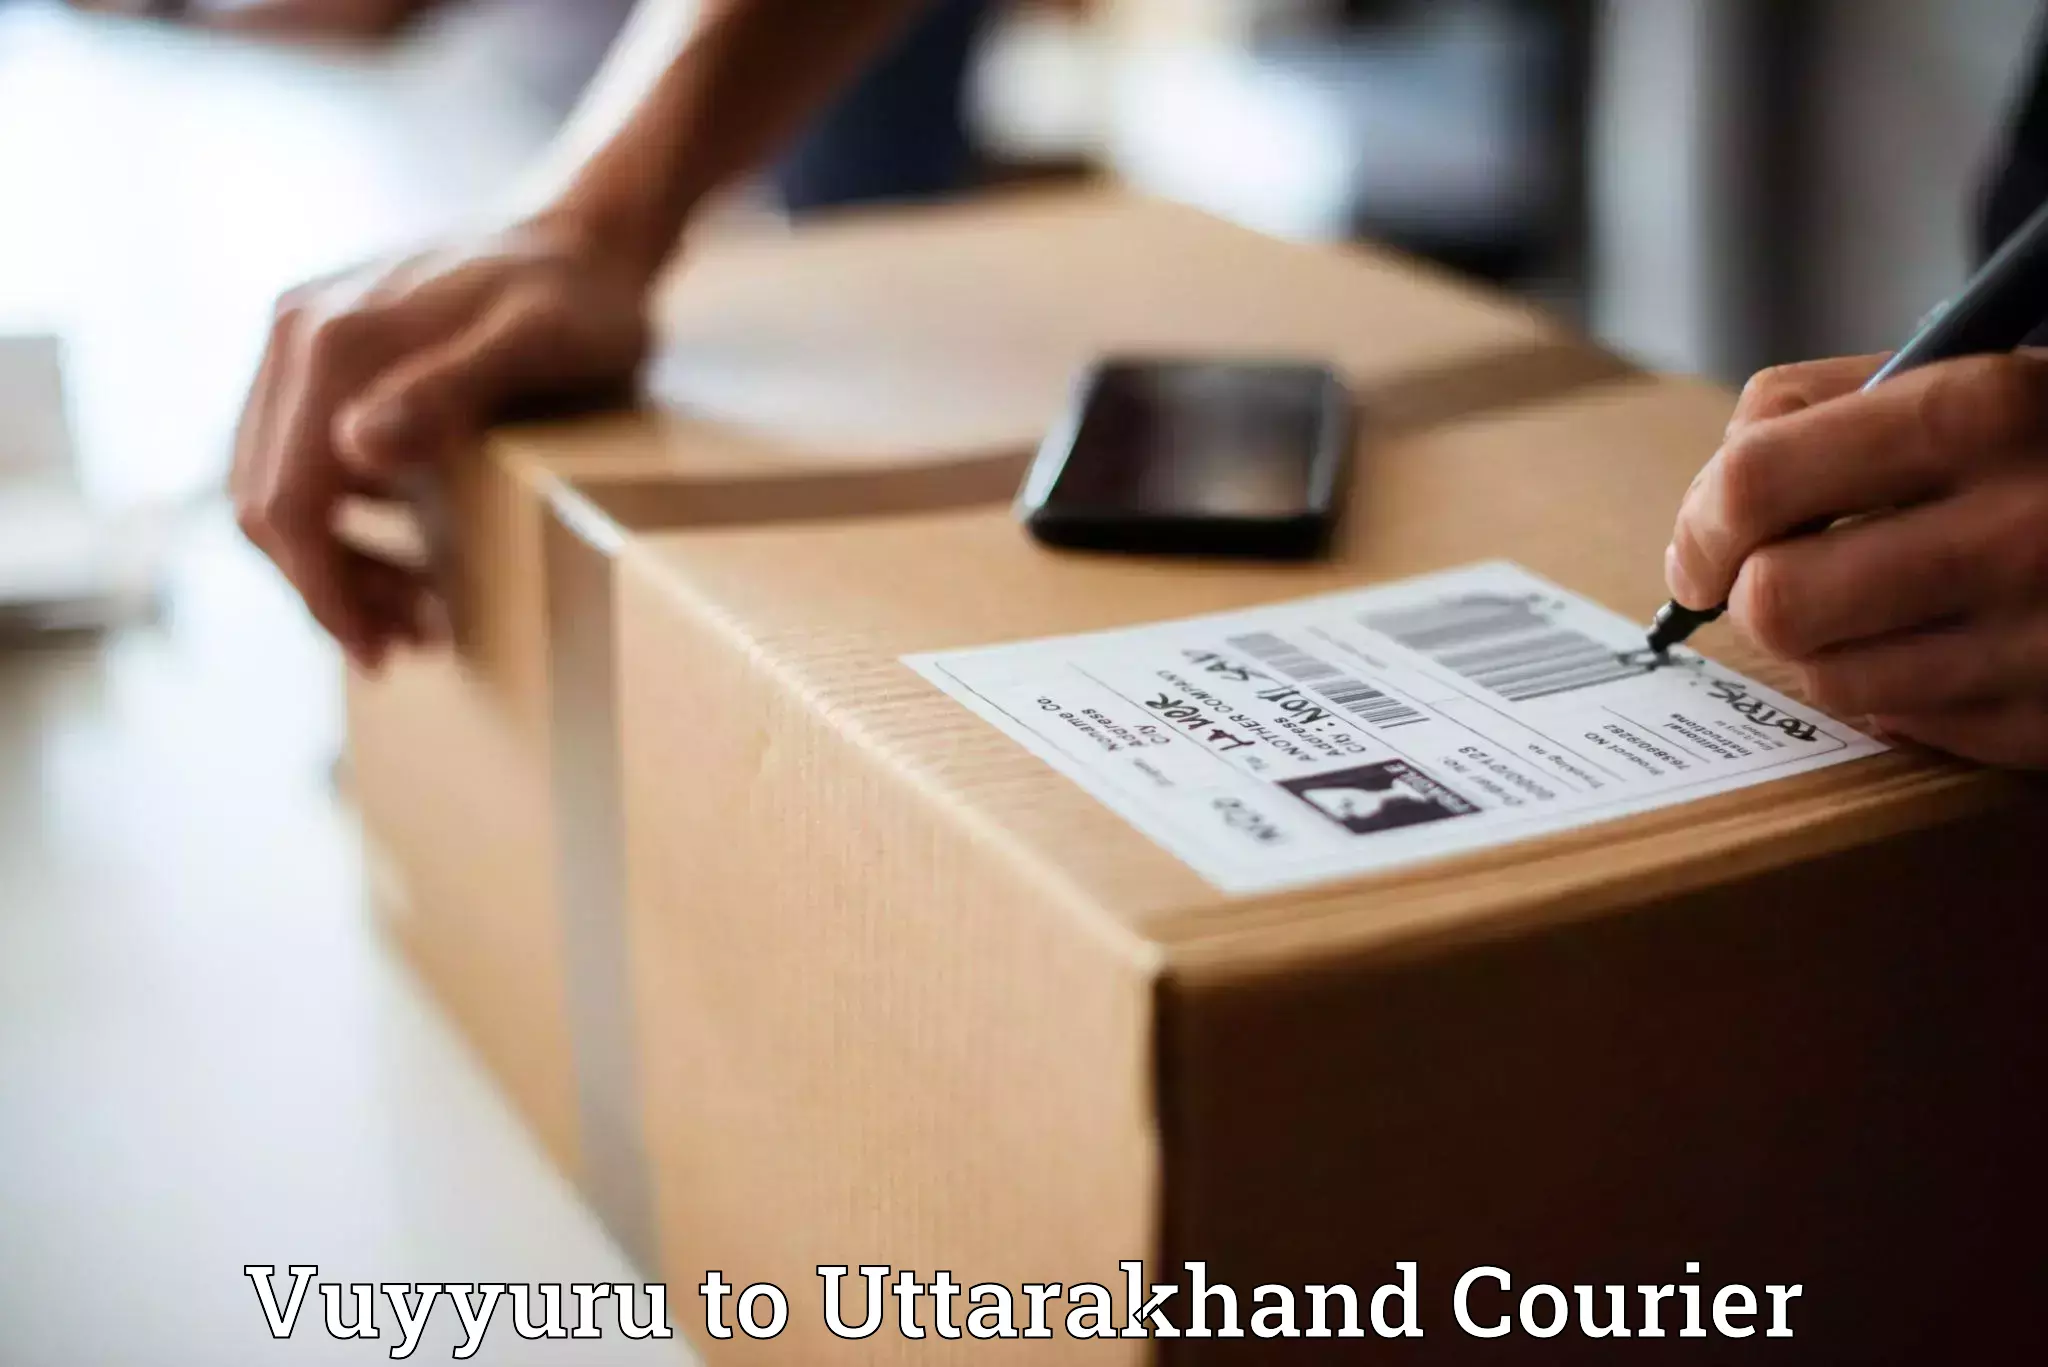 Parcel delivery Vuyyuru to Uttarakhand